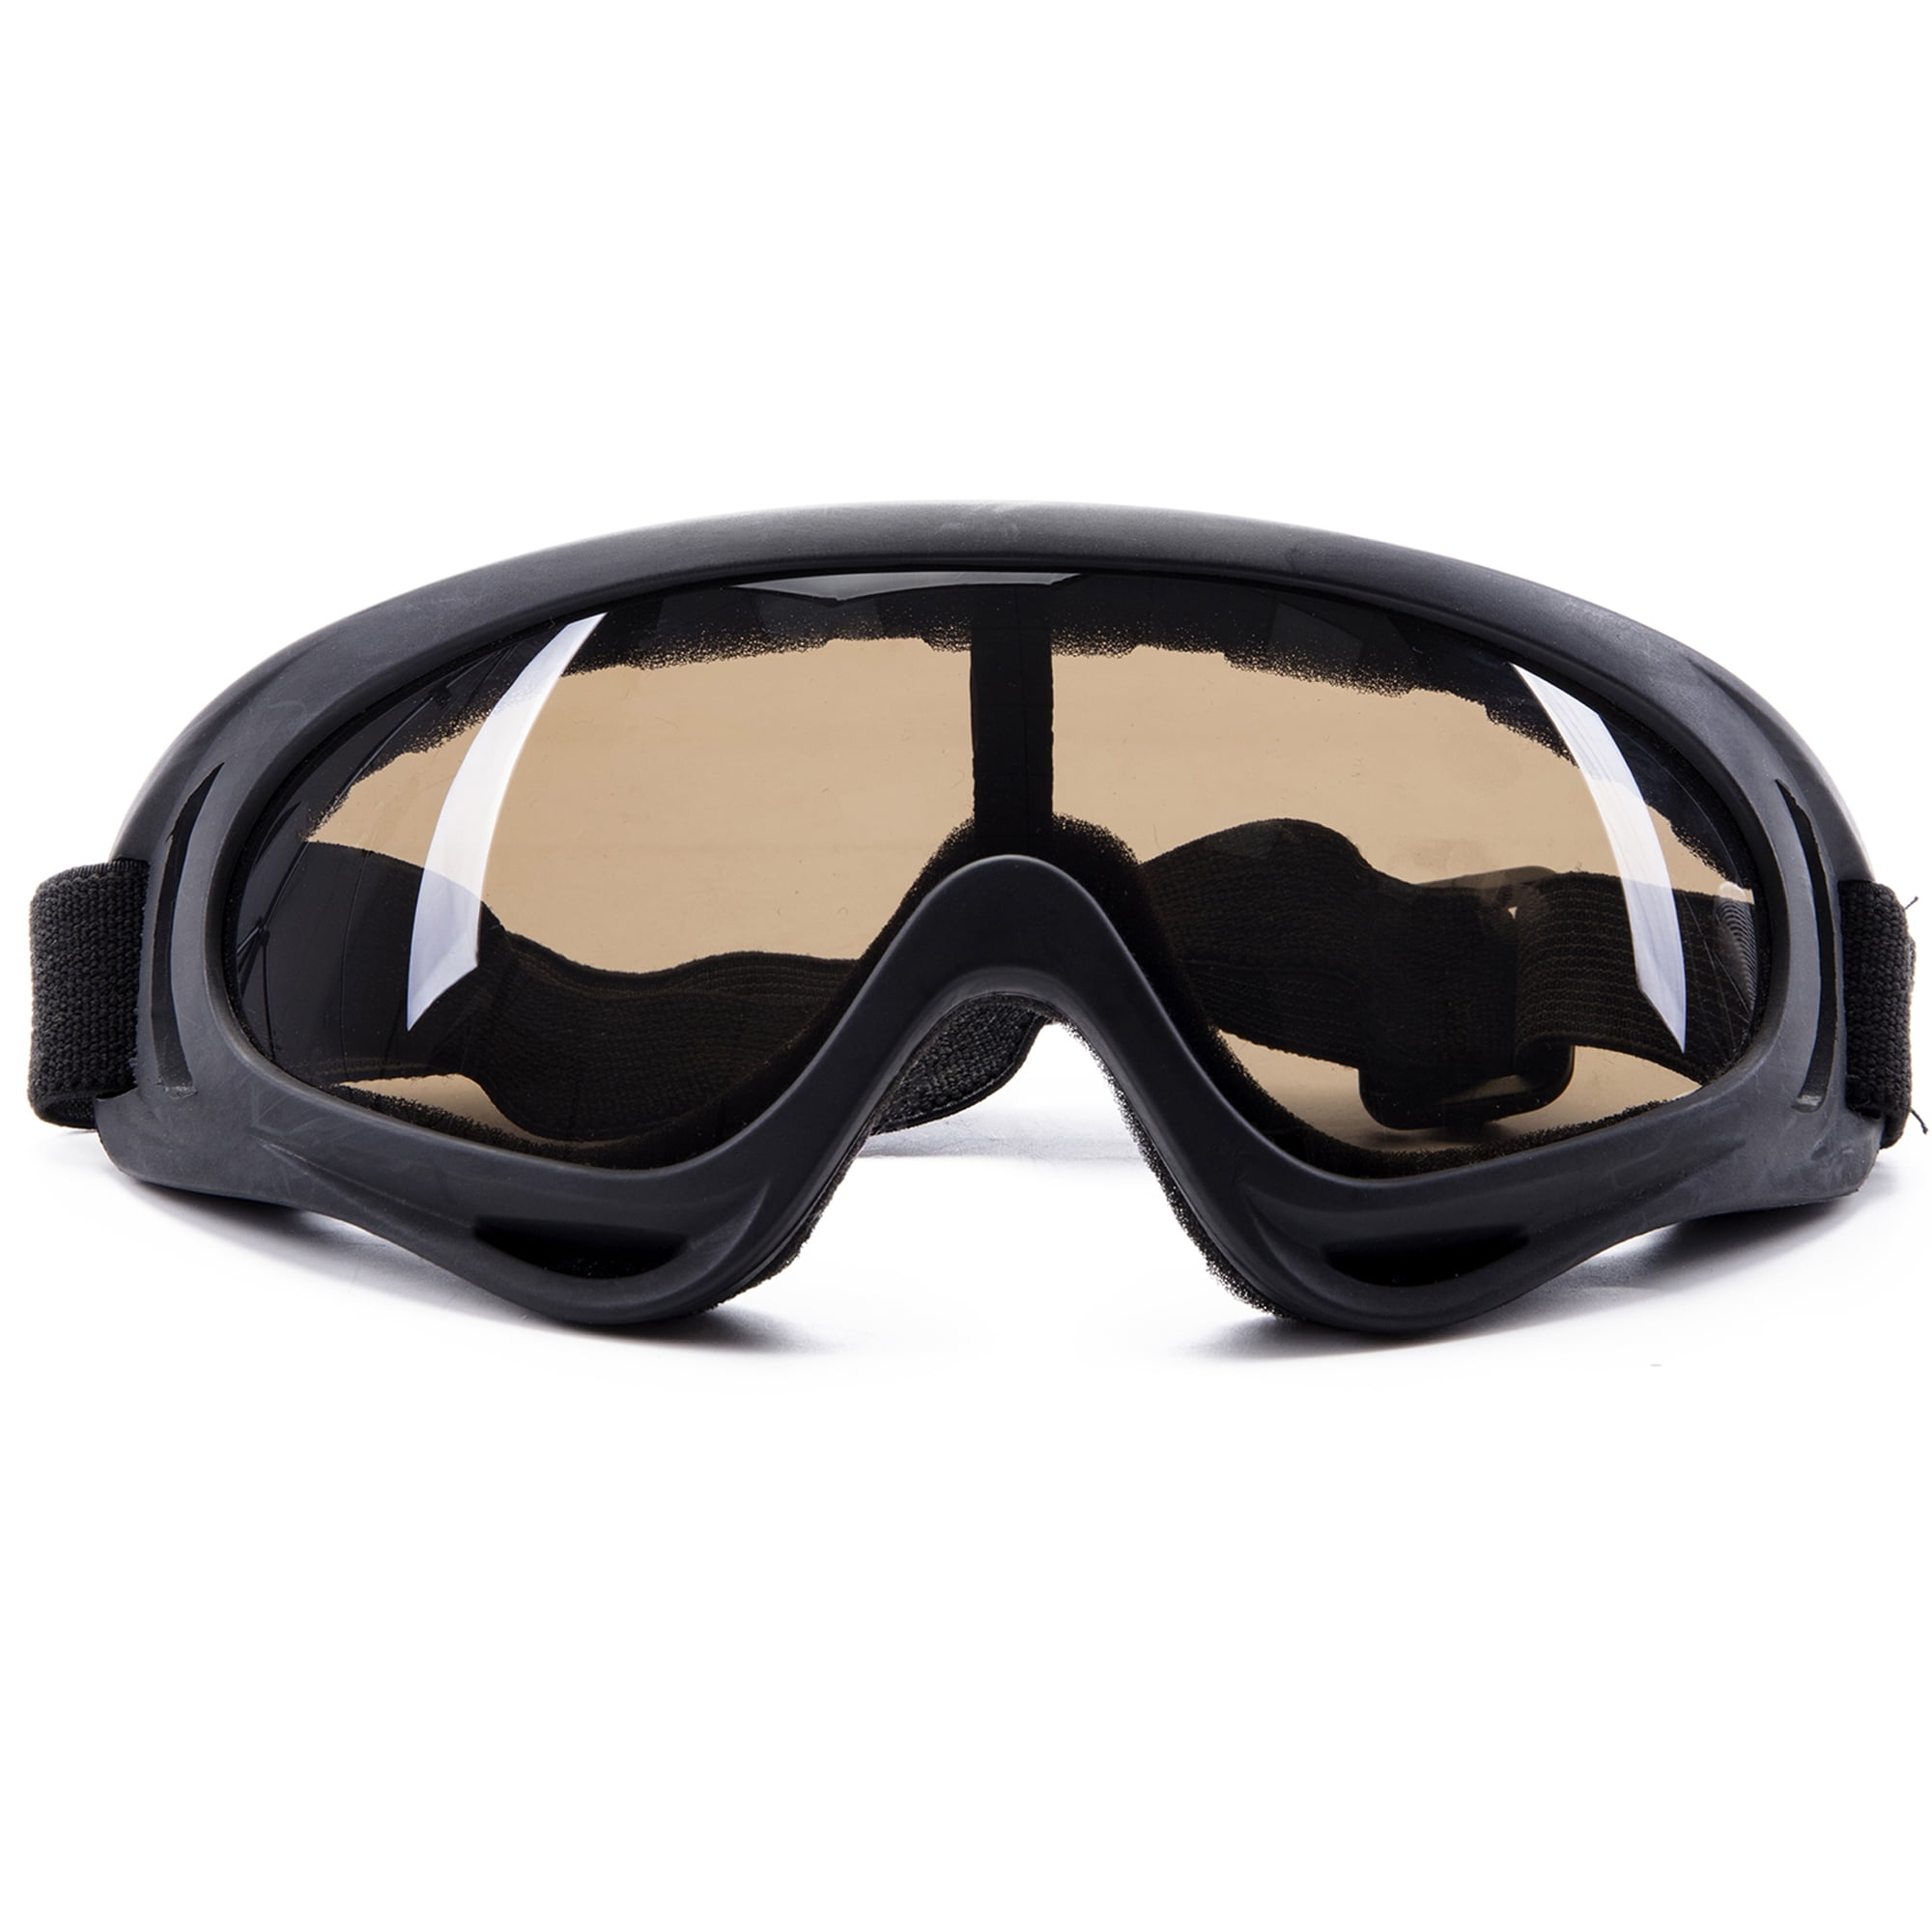 29DC X400 Helmets Goggles Ski Goggles Sunglasses Dustproof Outdoor 